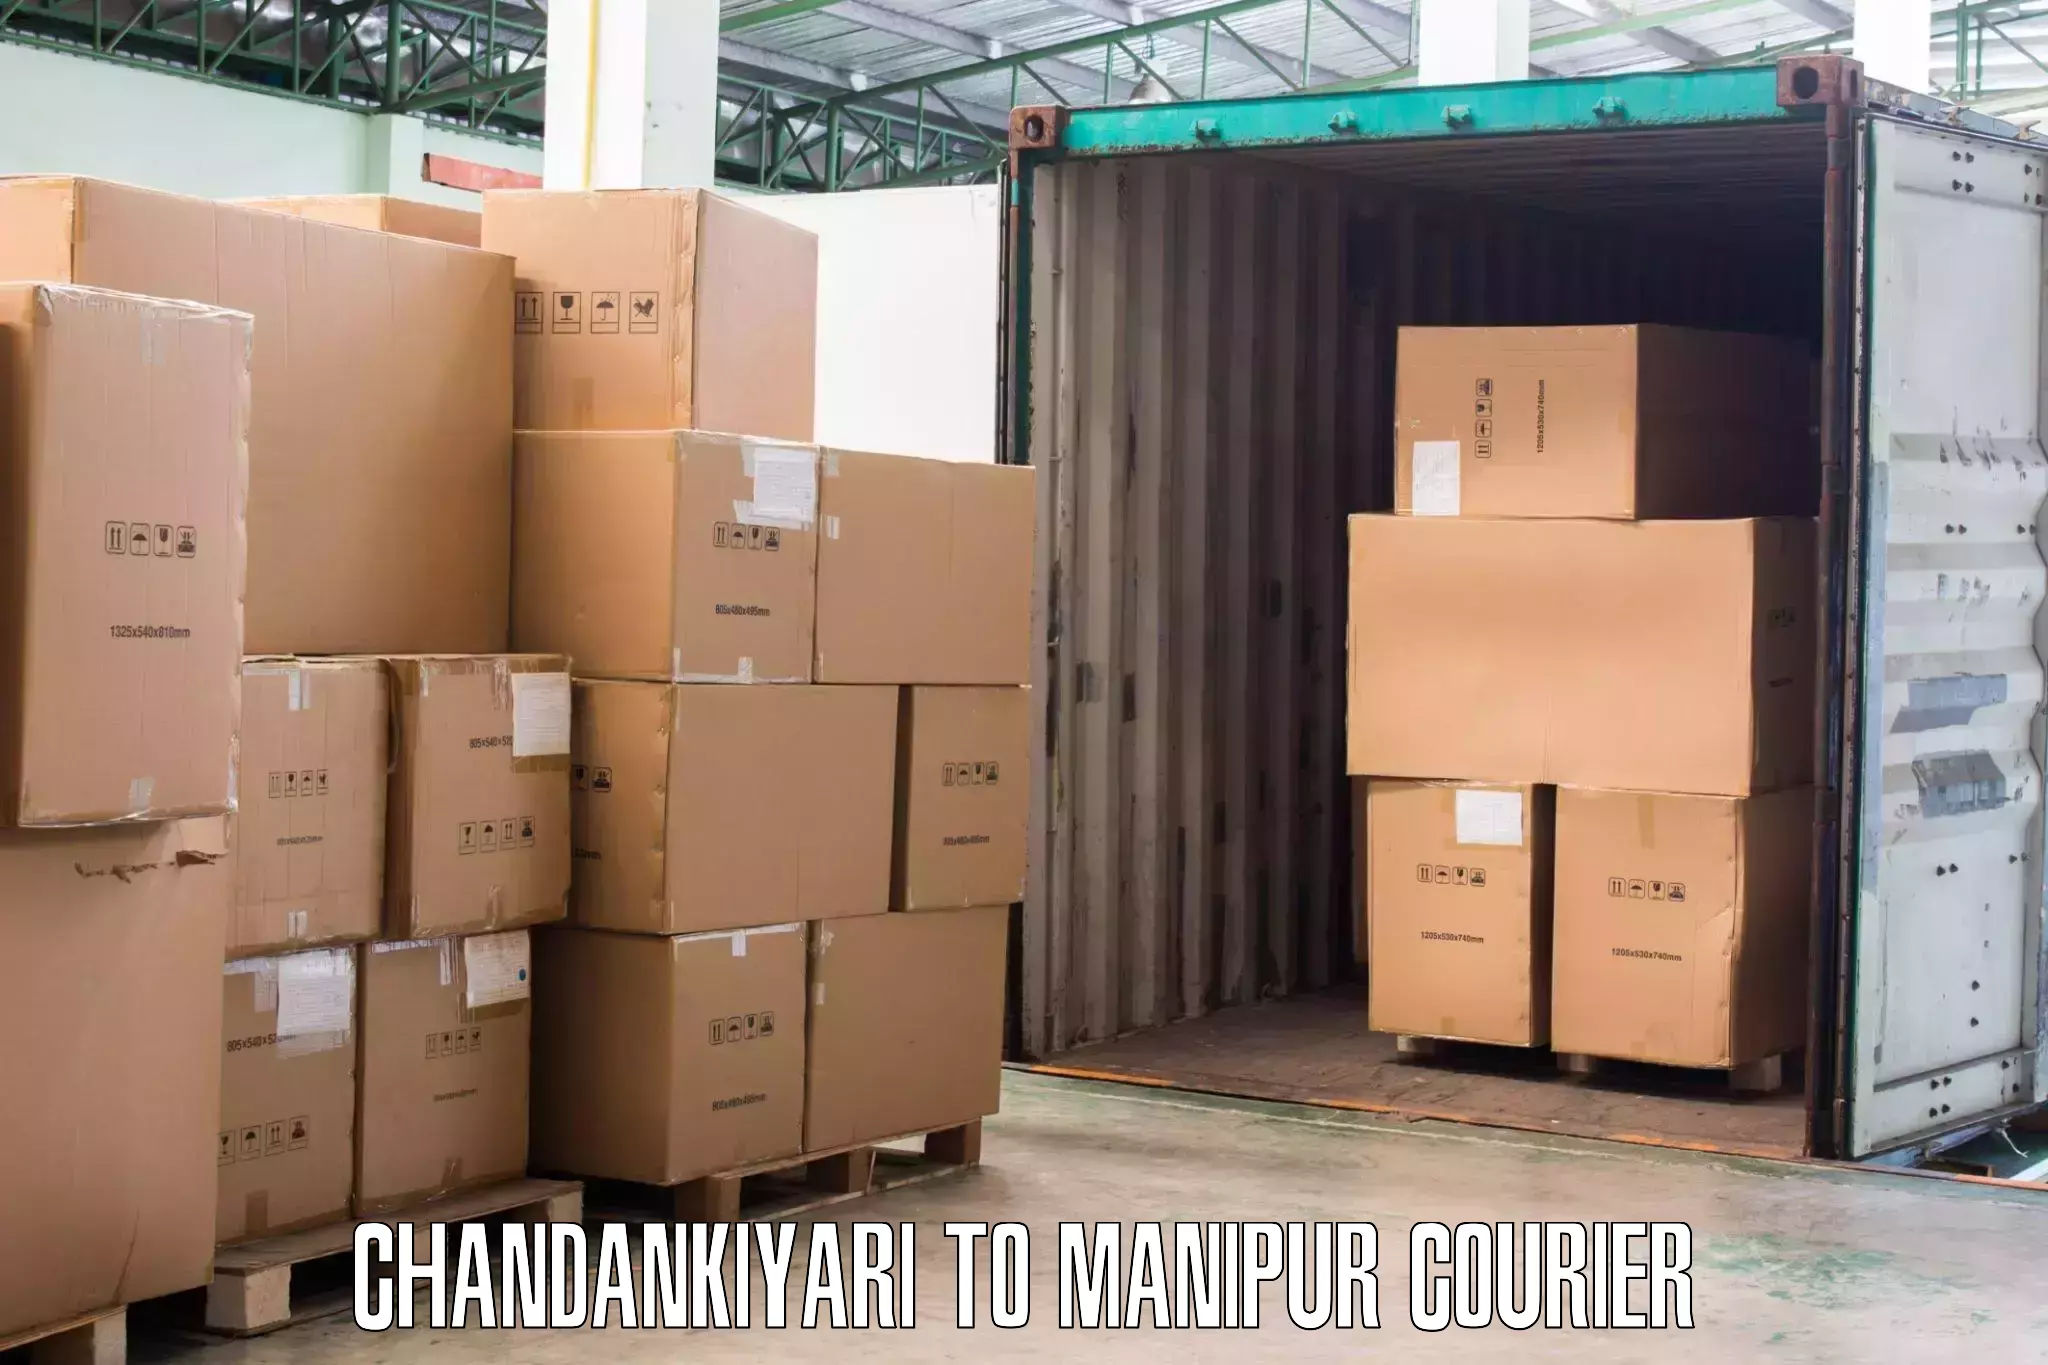 Furniture moving experts Chandankiyari to Kakching